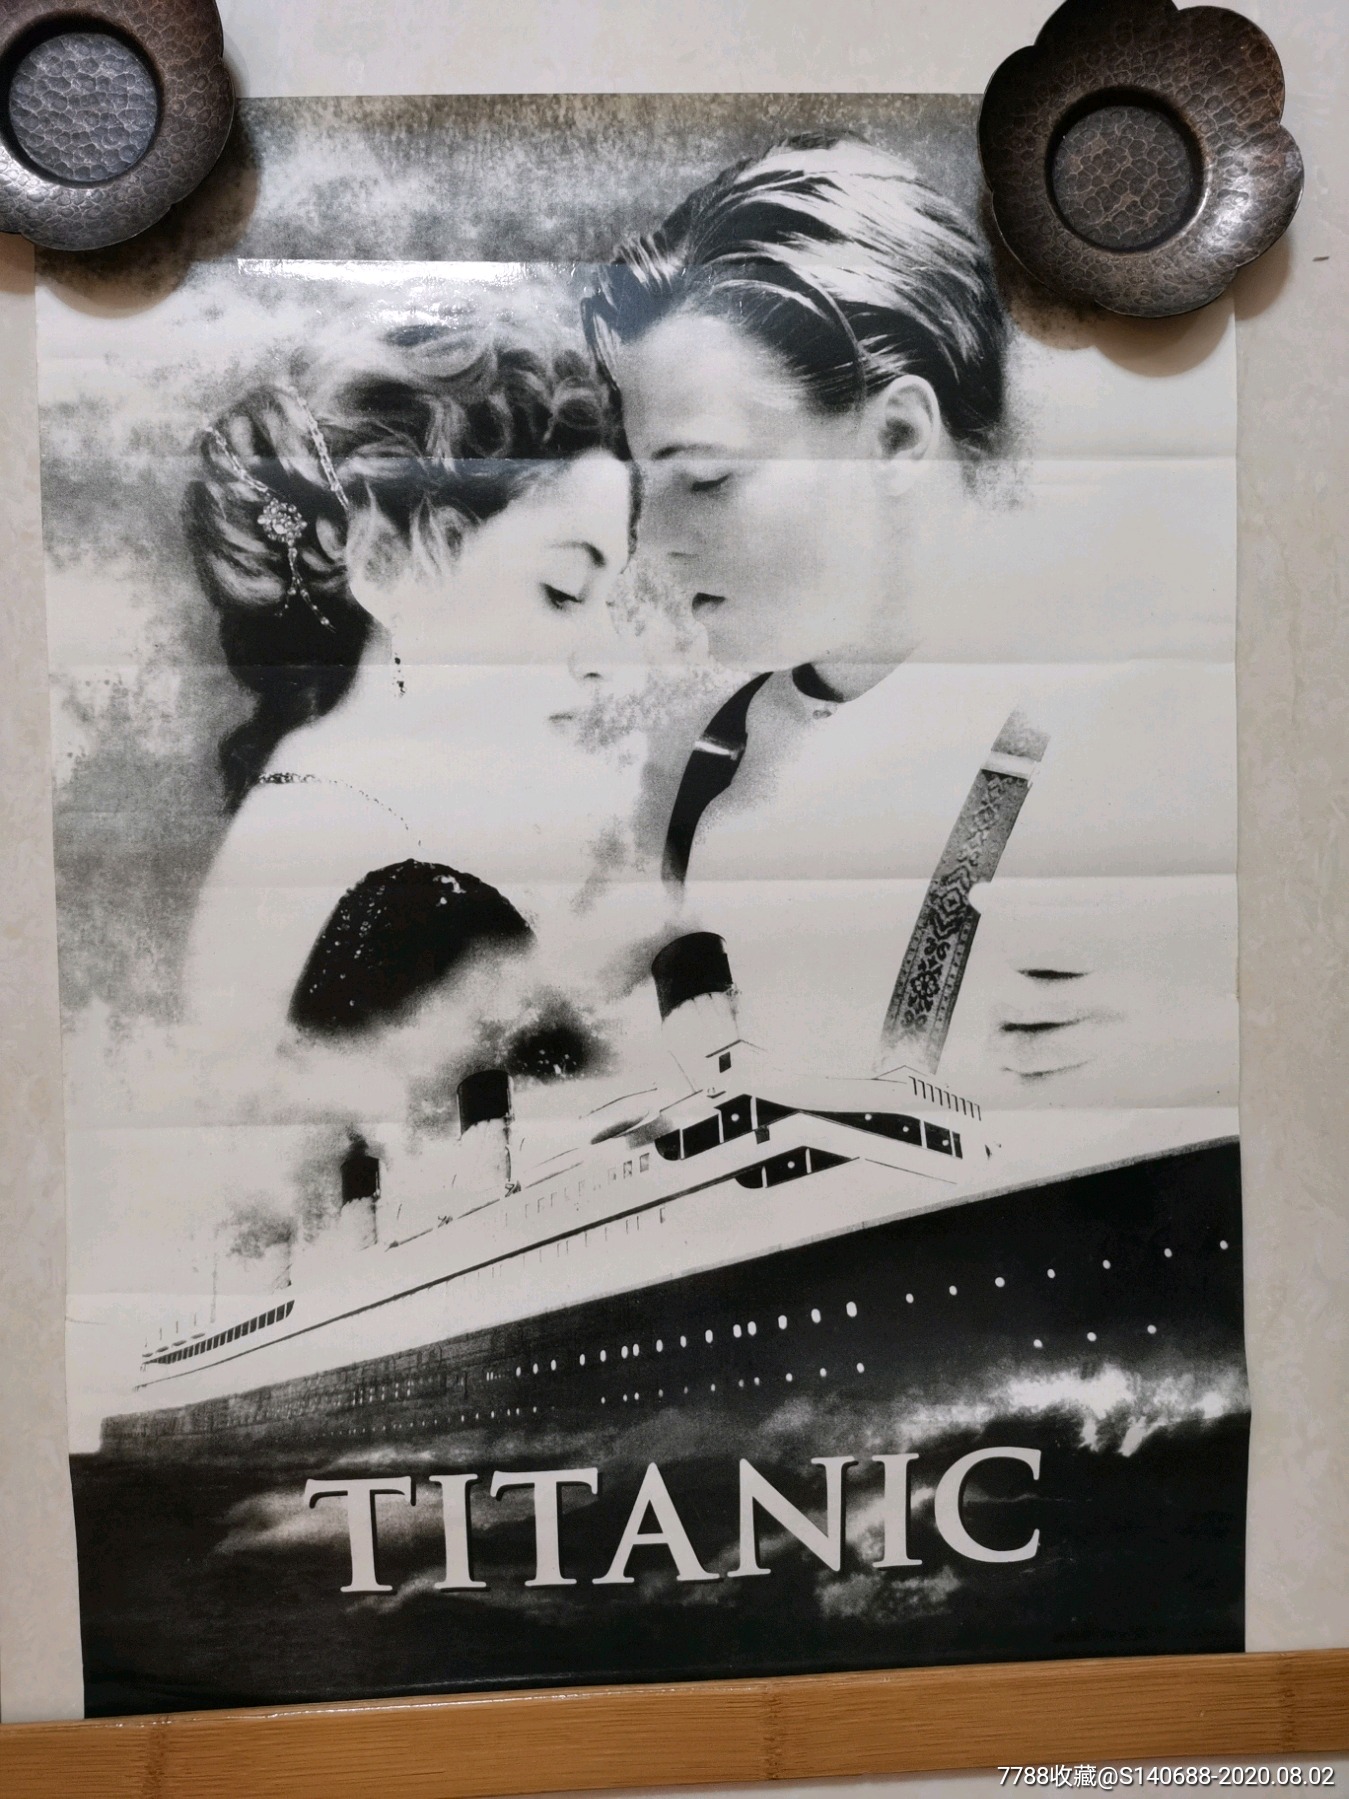 谁给个泰坦尼克号超清壁纸打包下载链接？最好是百度网盘的_百度知道